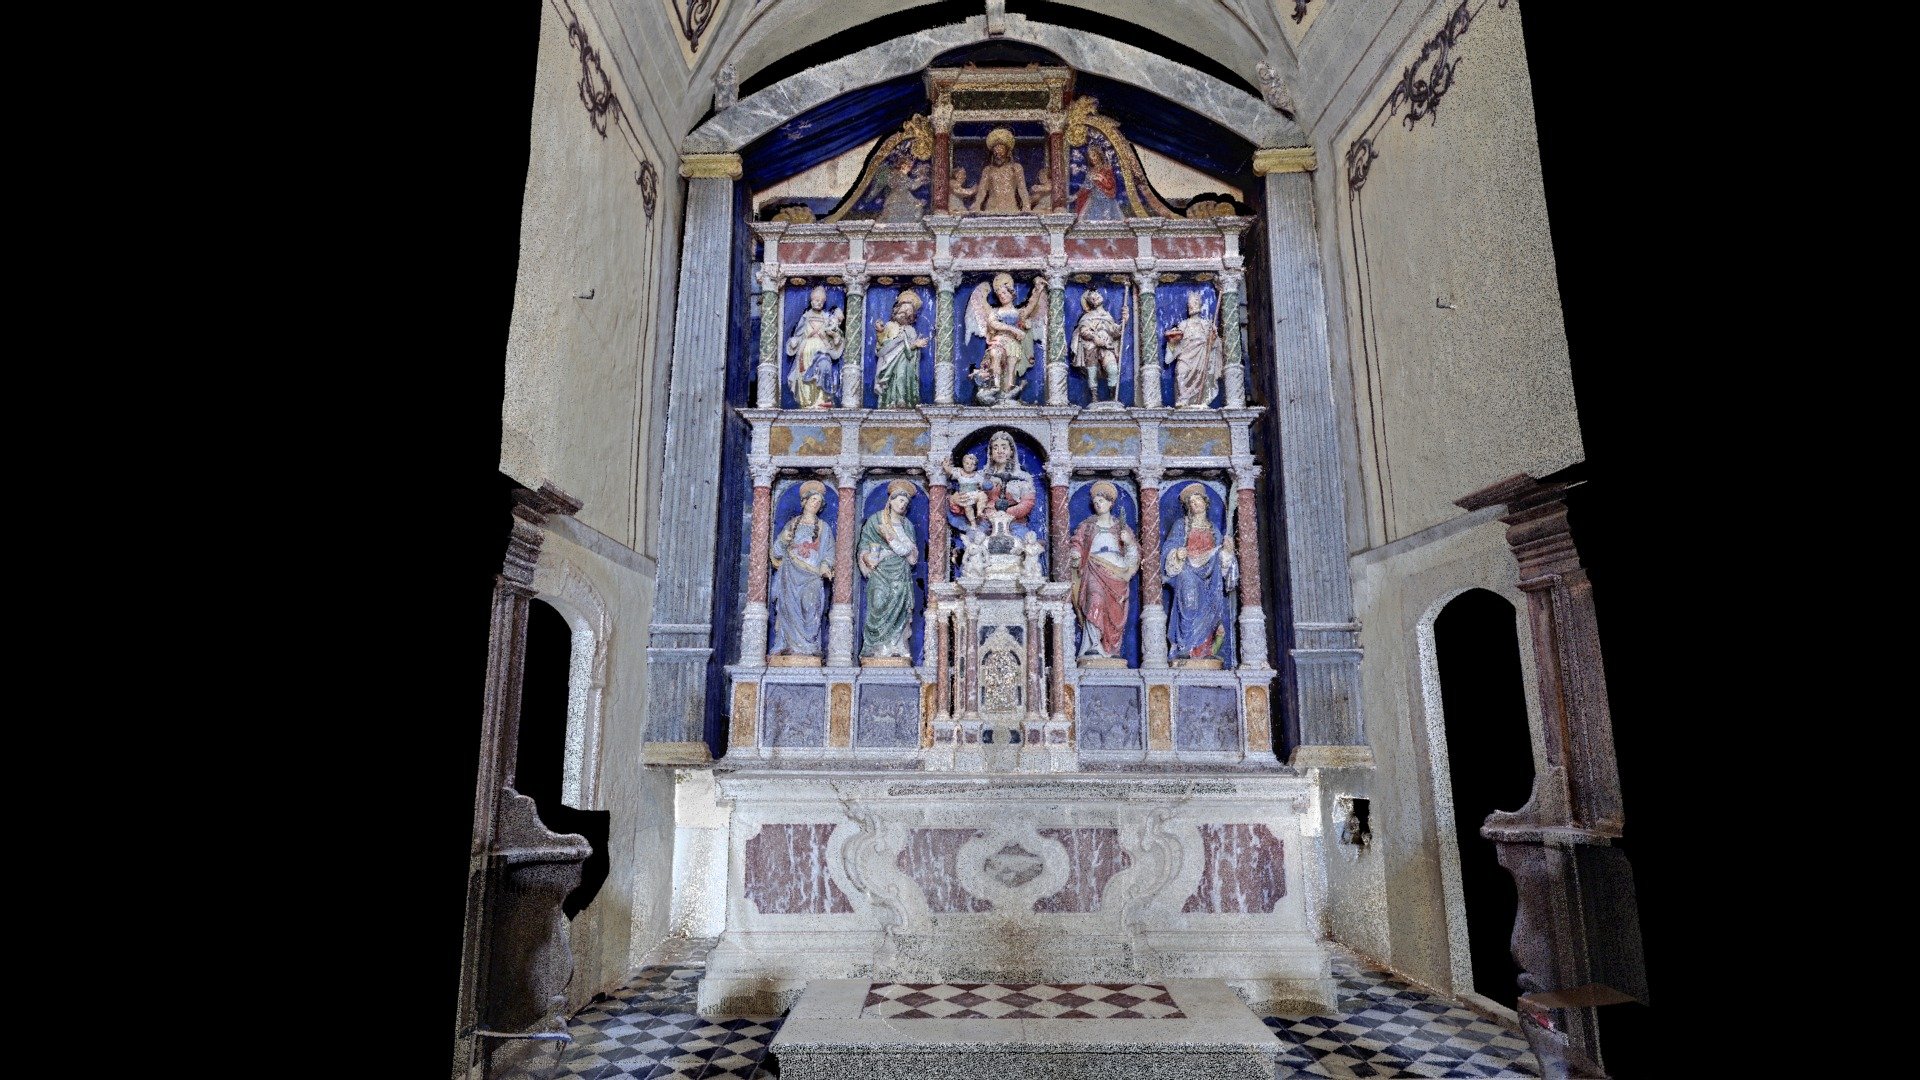 Church of St. Mary Magdalene - Main altar